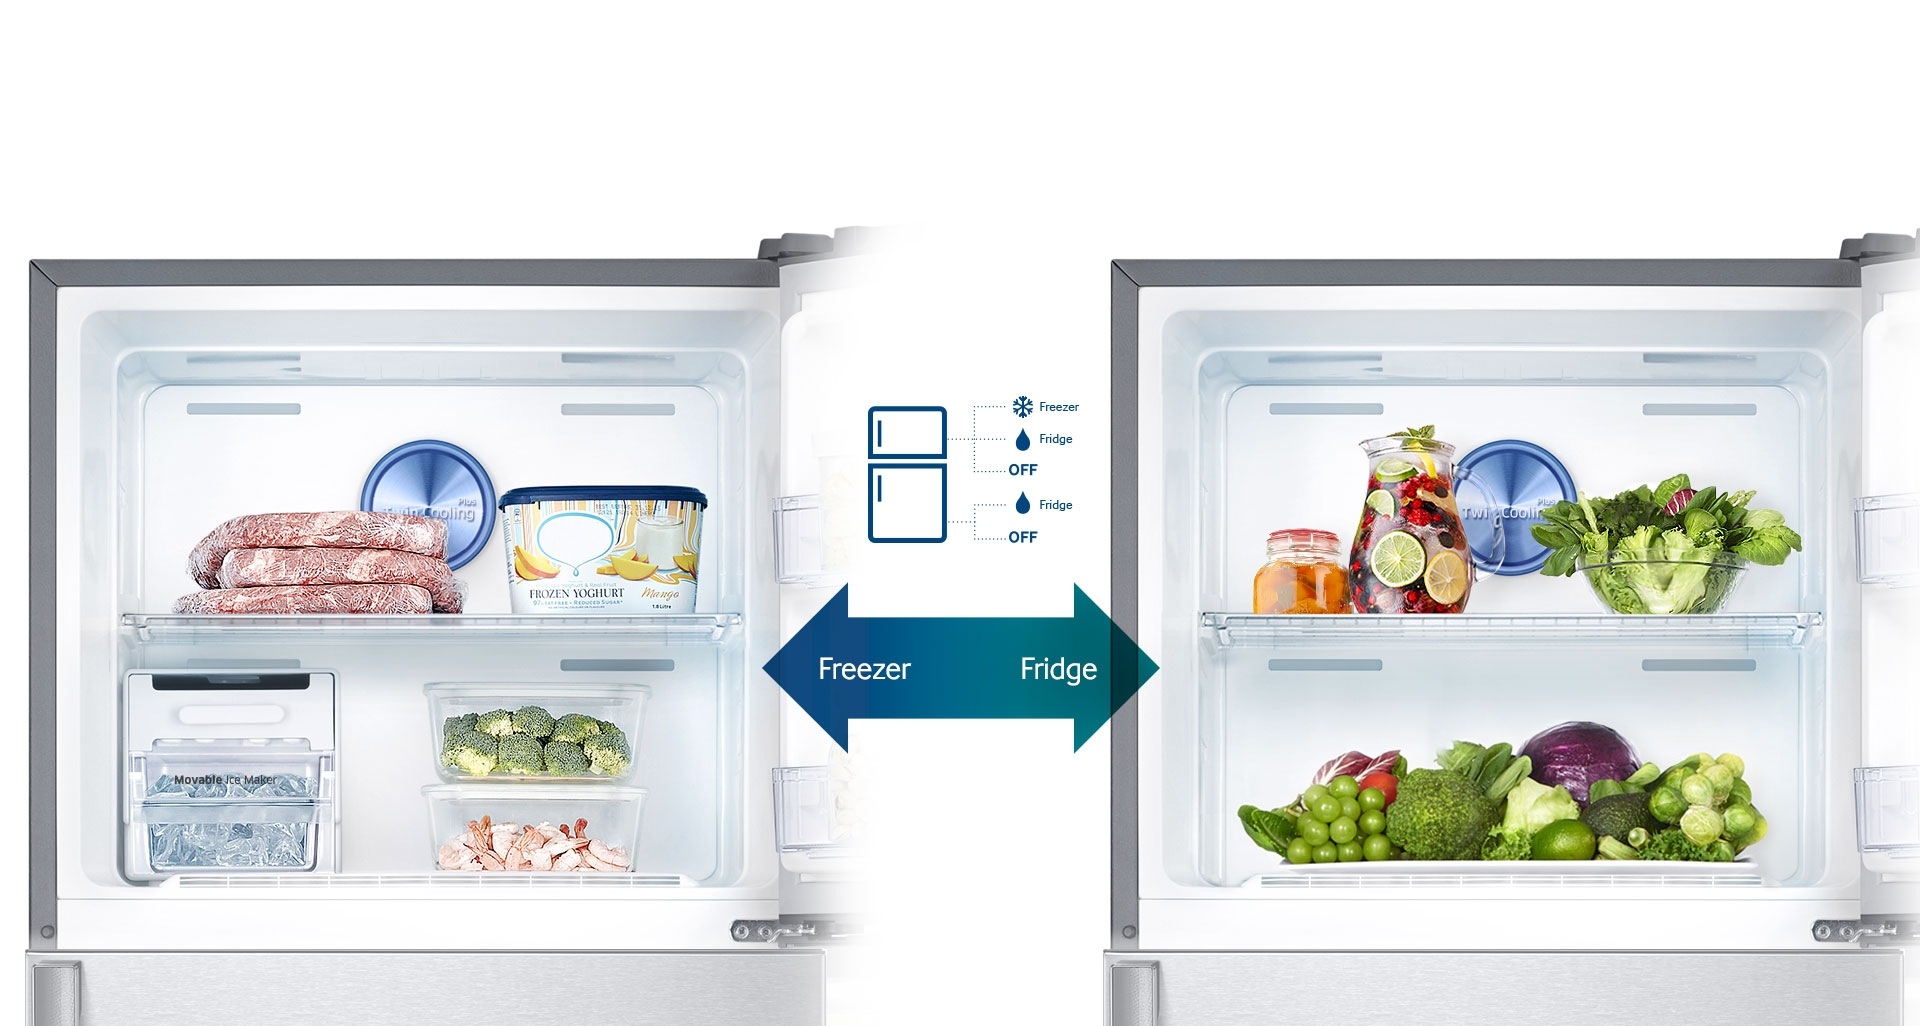 Ce réfrigérateur offre ce qui se fait de mieux en matière de flexibilité de stockage. Vous pouvez facilement transformer votre congélateur en réfrigérateur afin d’y conserver tous les aliments frais que vous devez stocker selon les saisons ou pour des occasions spéciales. Vous pouvez aussi sélectionner le mode OFF* pour des économies d’énergie, selon les spécifications.